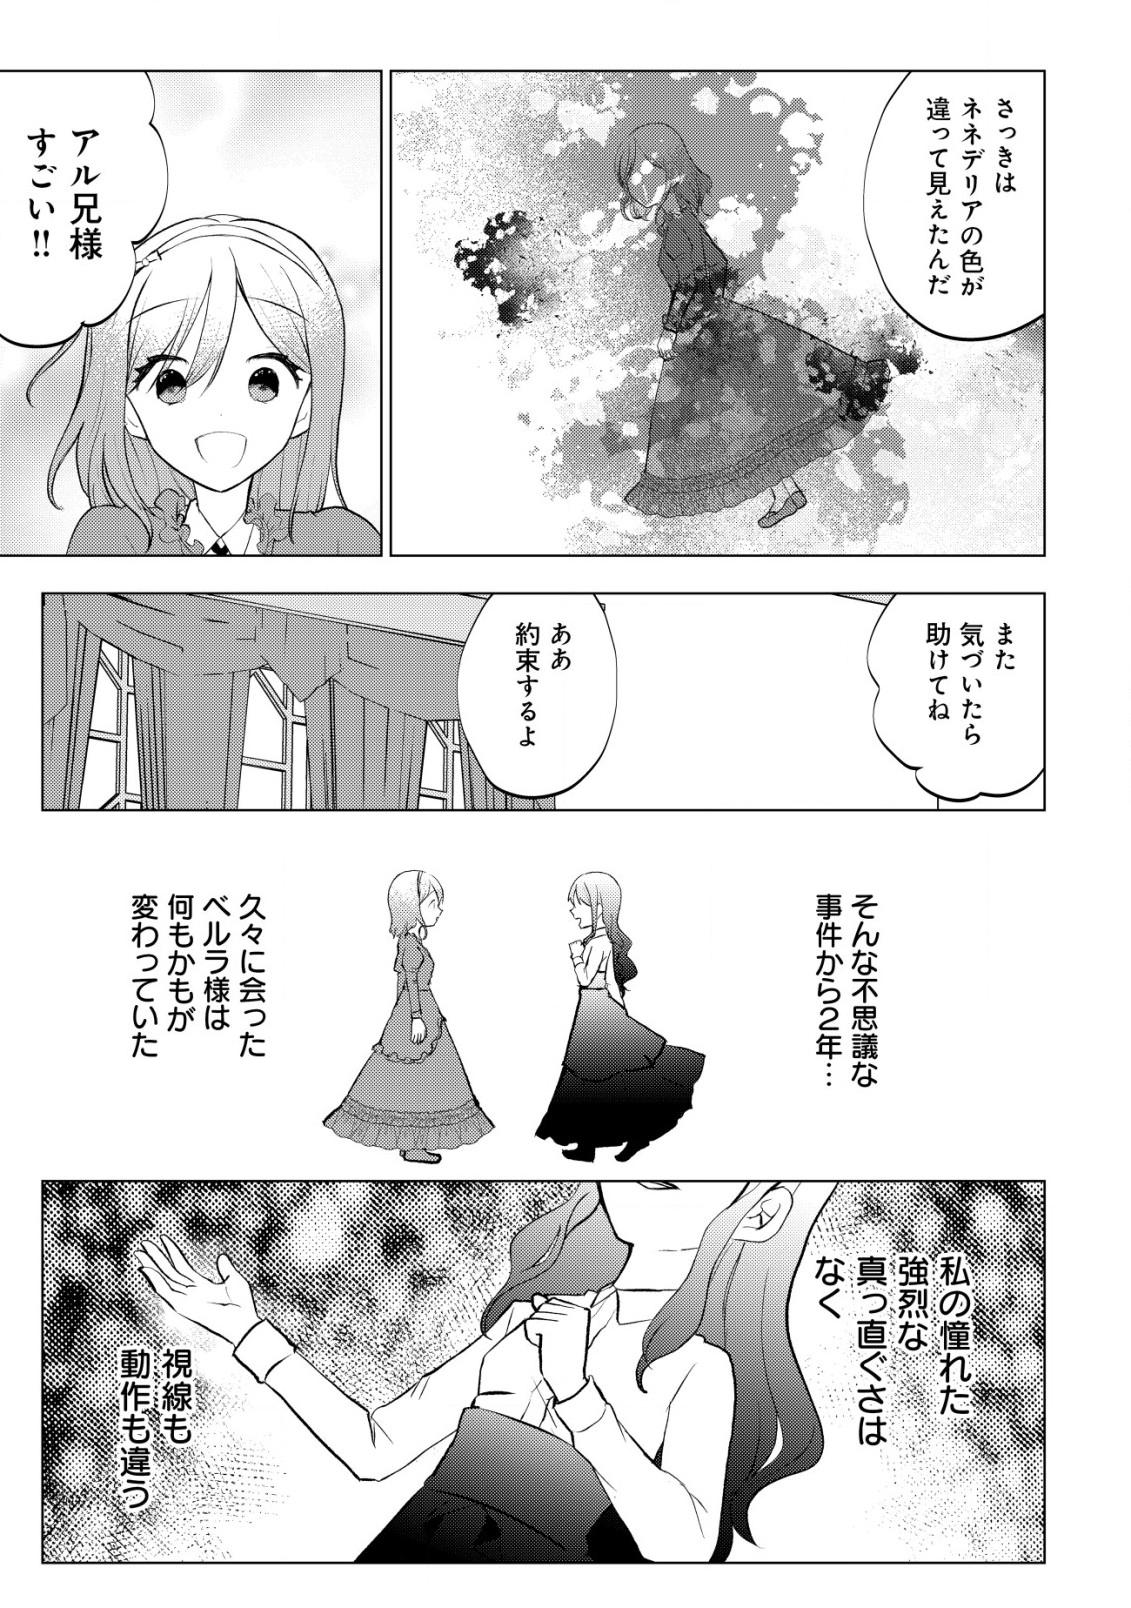 Karada wo Ubawareta Watashi to, Madoushi no Papa - Chapter 7.2 - Page 1